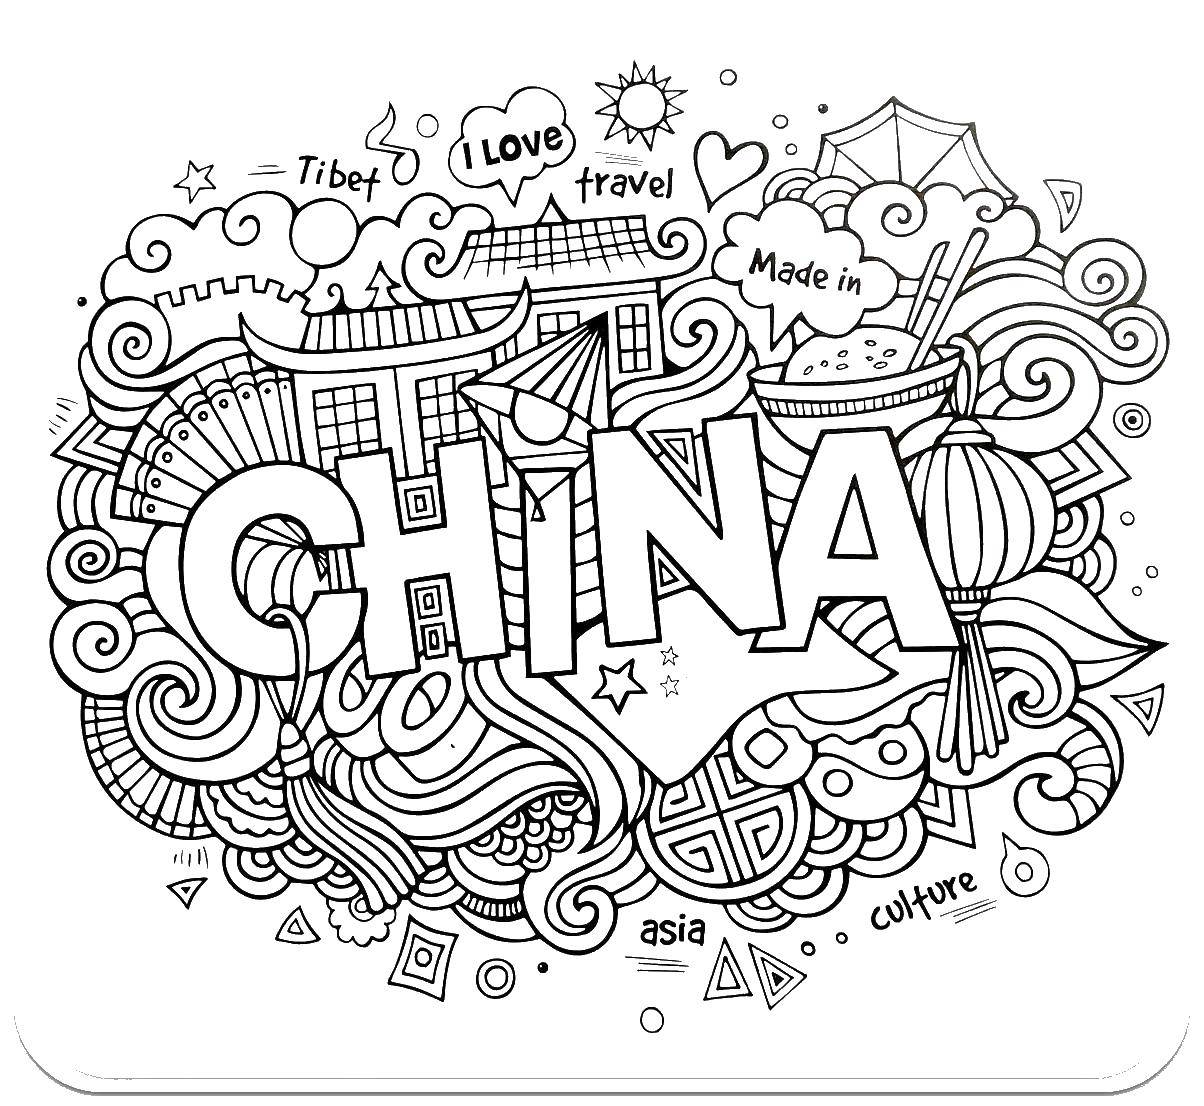 Название: Раскраска Китай. Категория: раскраски антистресс. Теги: Китай, путешествие, антистресс.